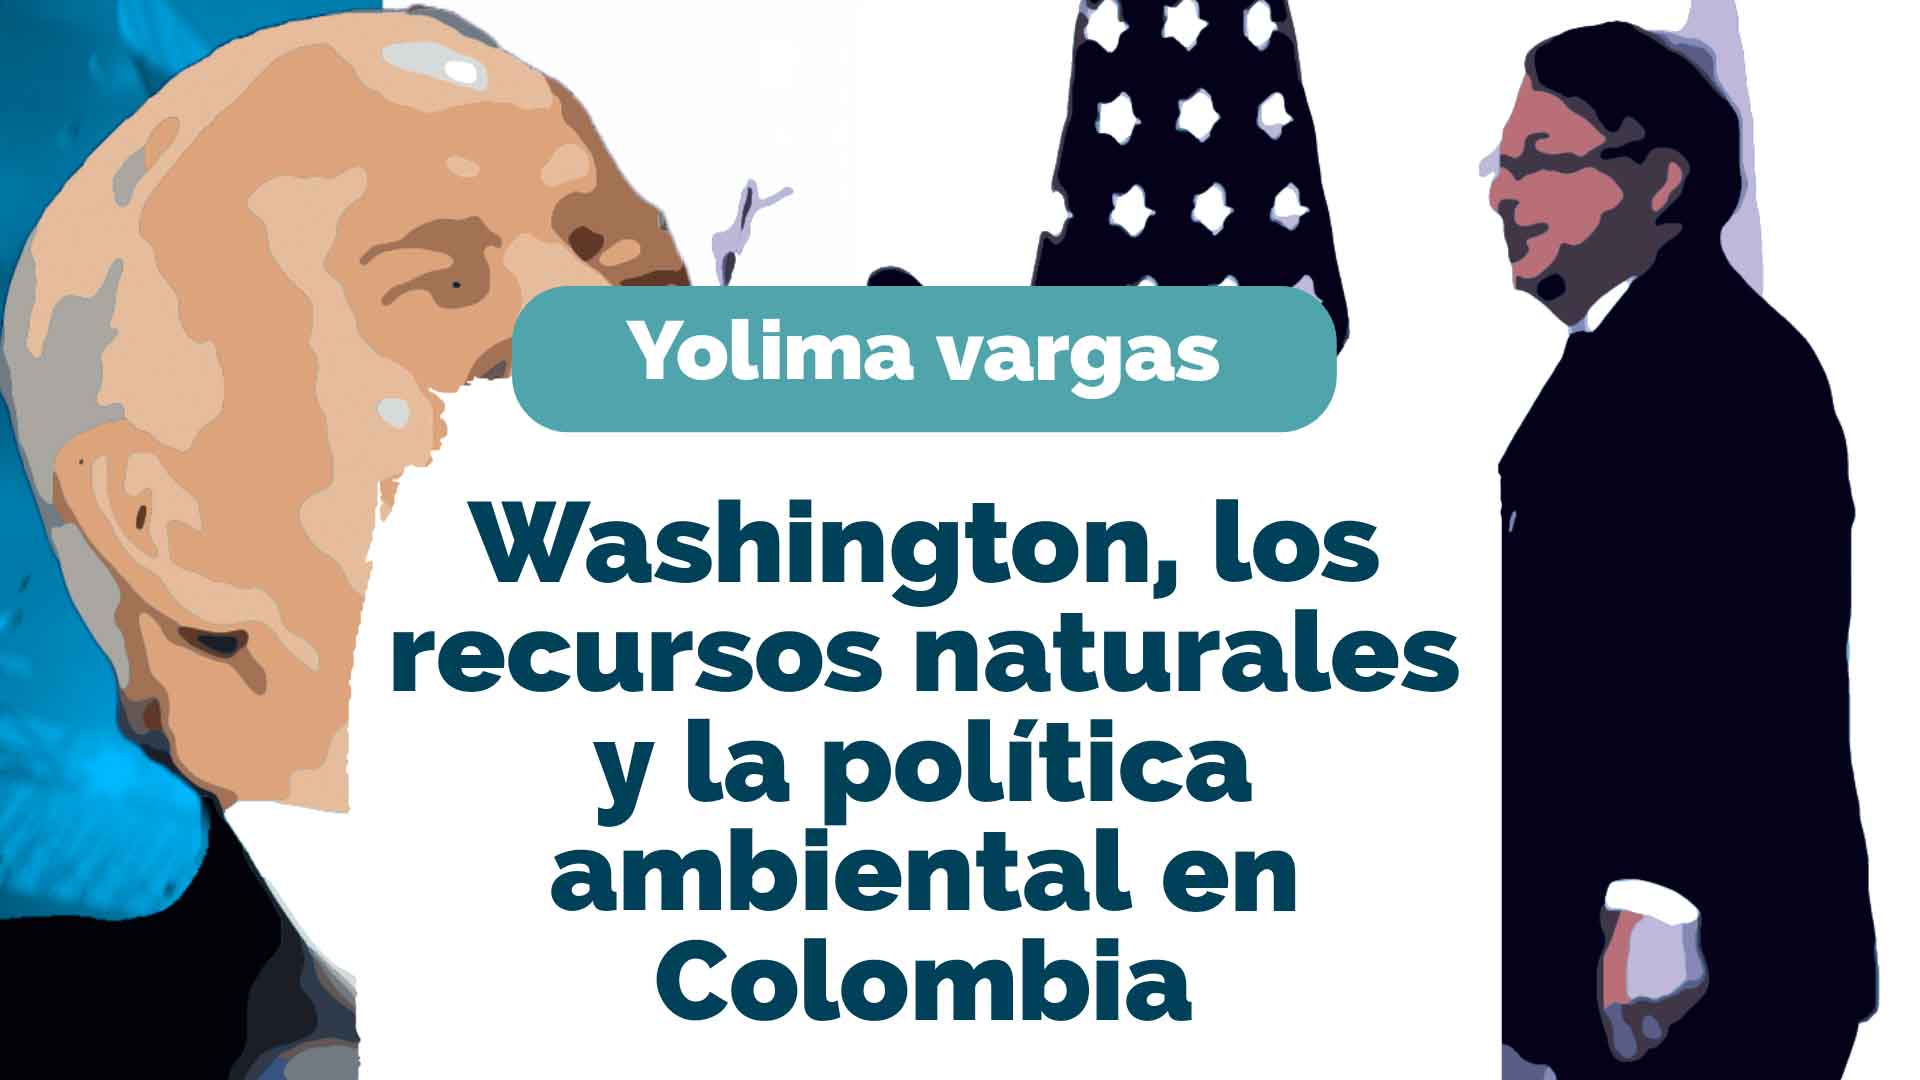 Washington, los recursos naturales y la política ambiental en Colombia